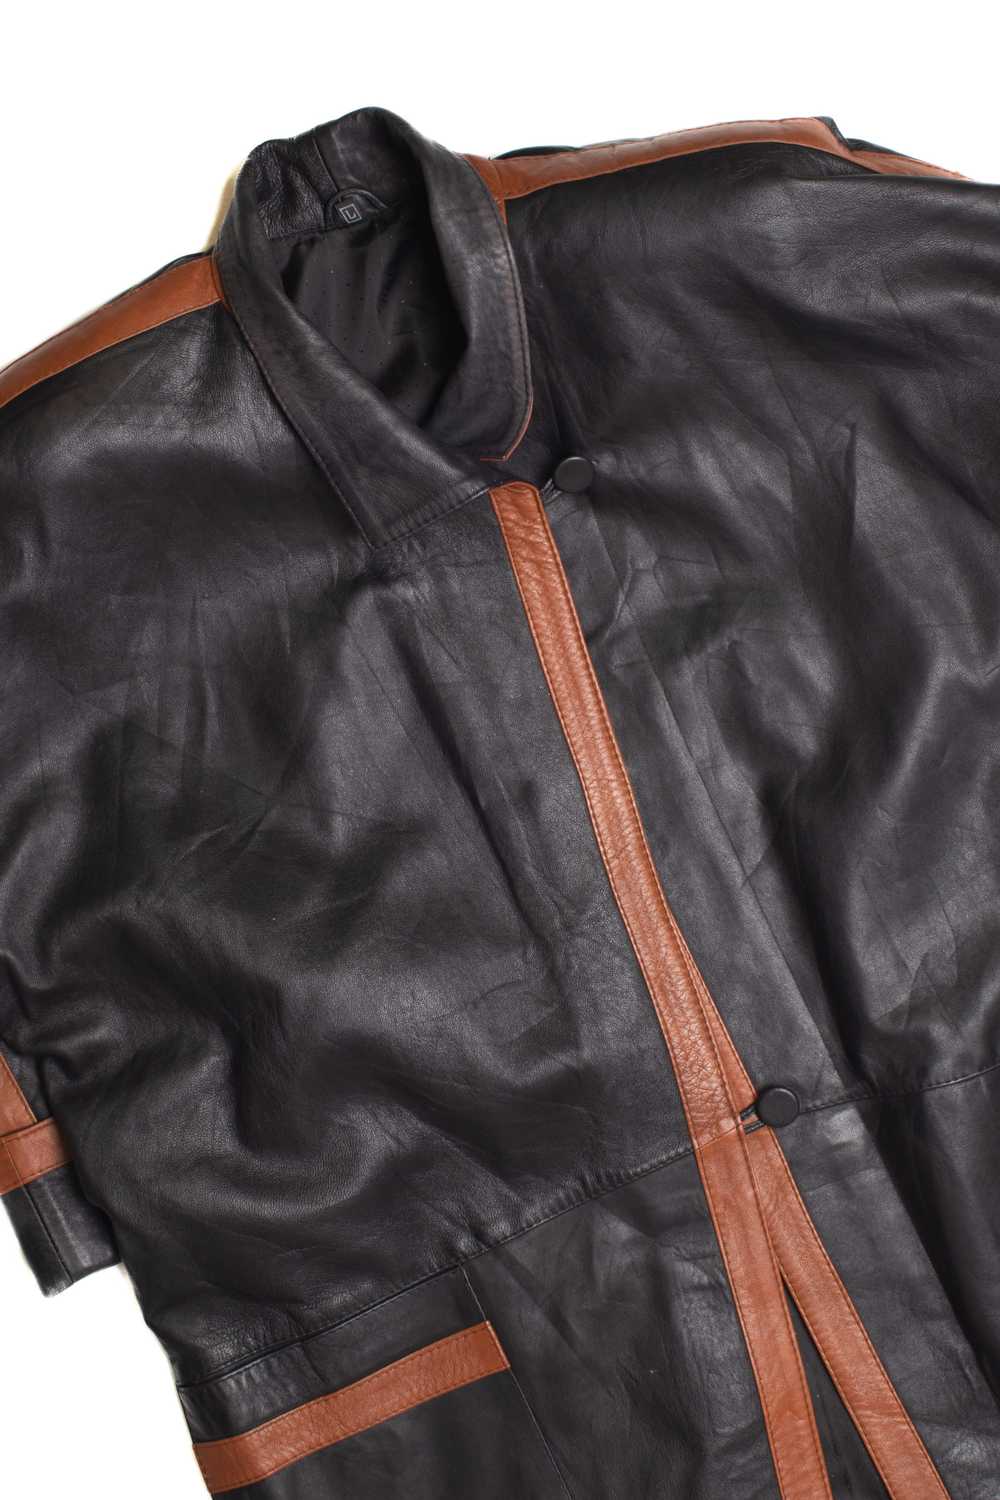 Long Black Leather Jacket - image 2